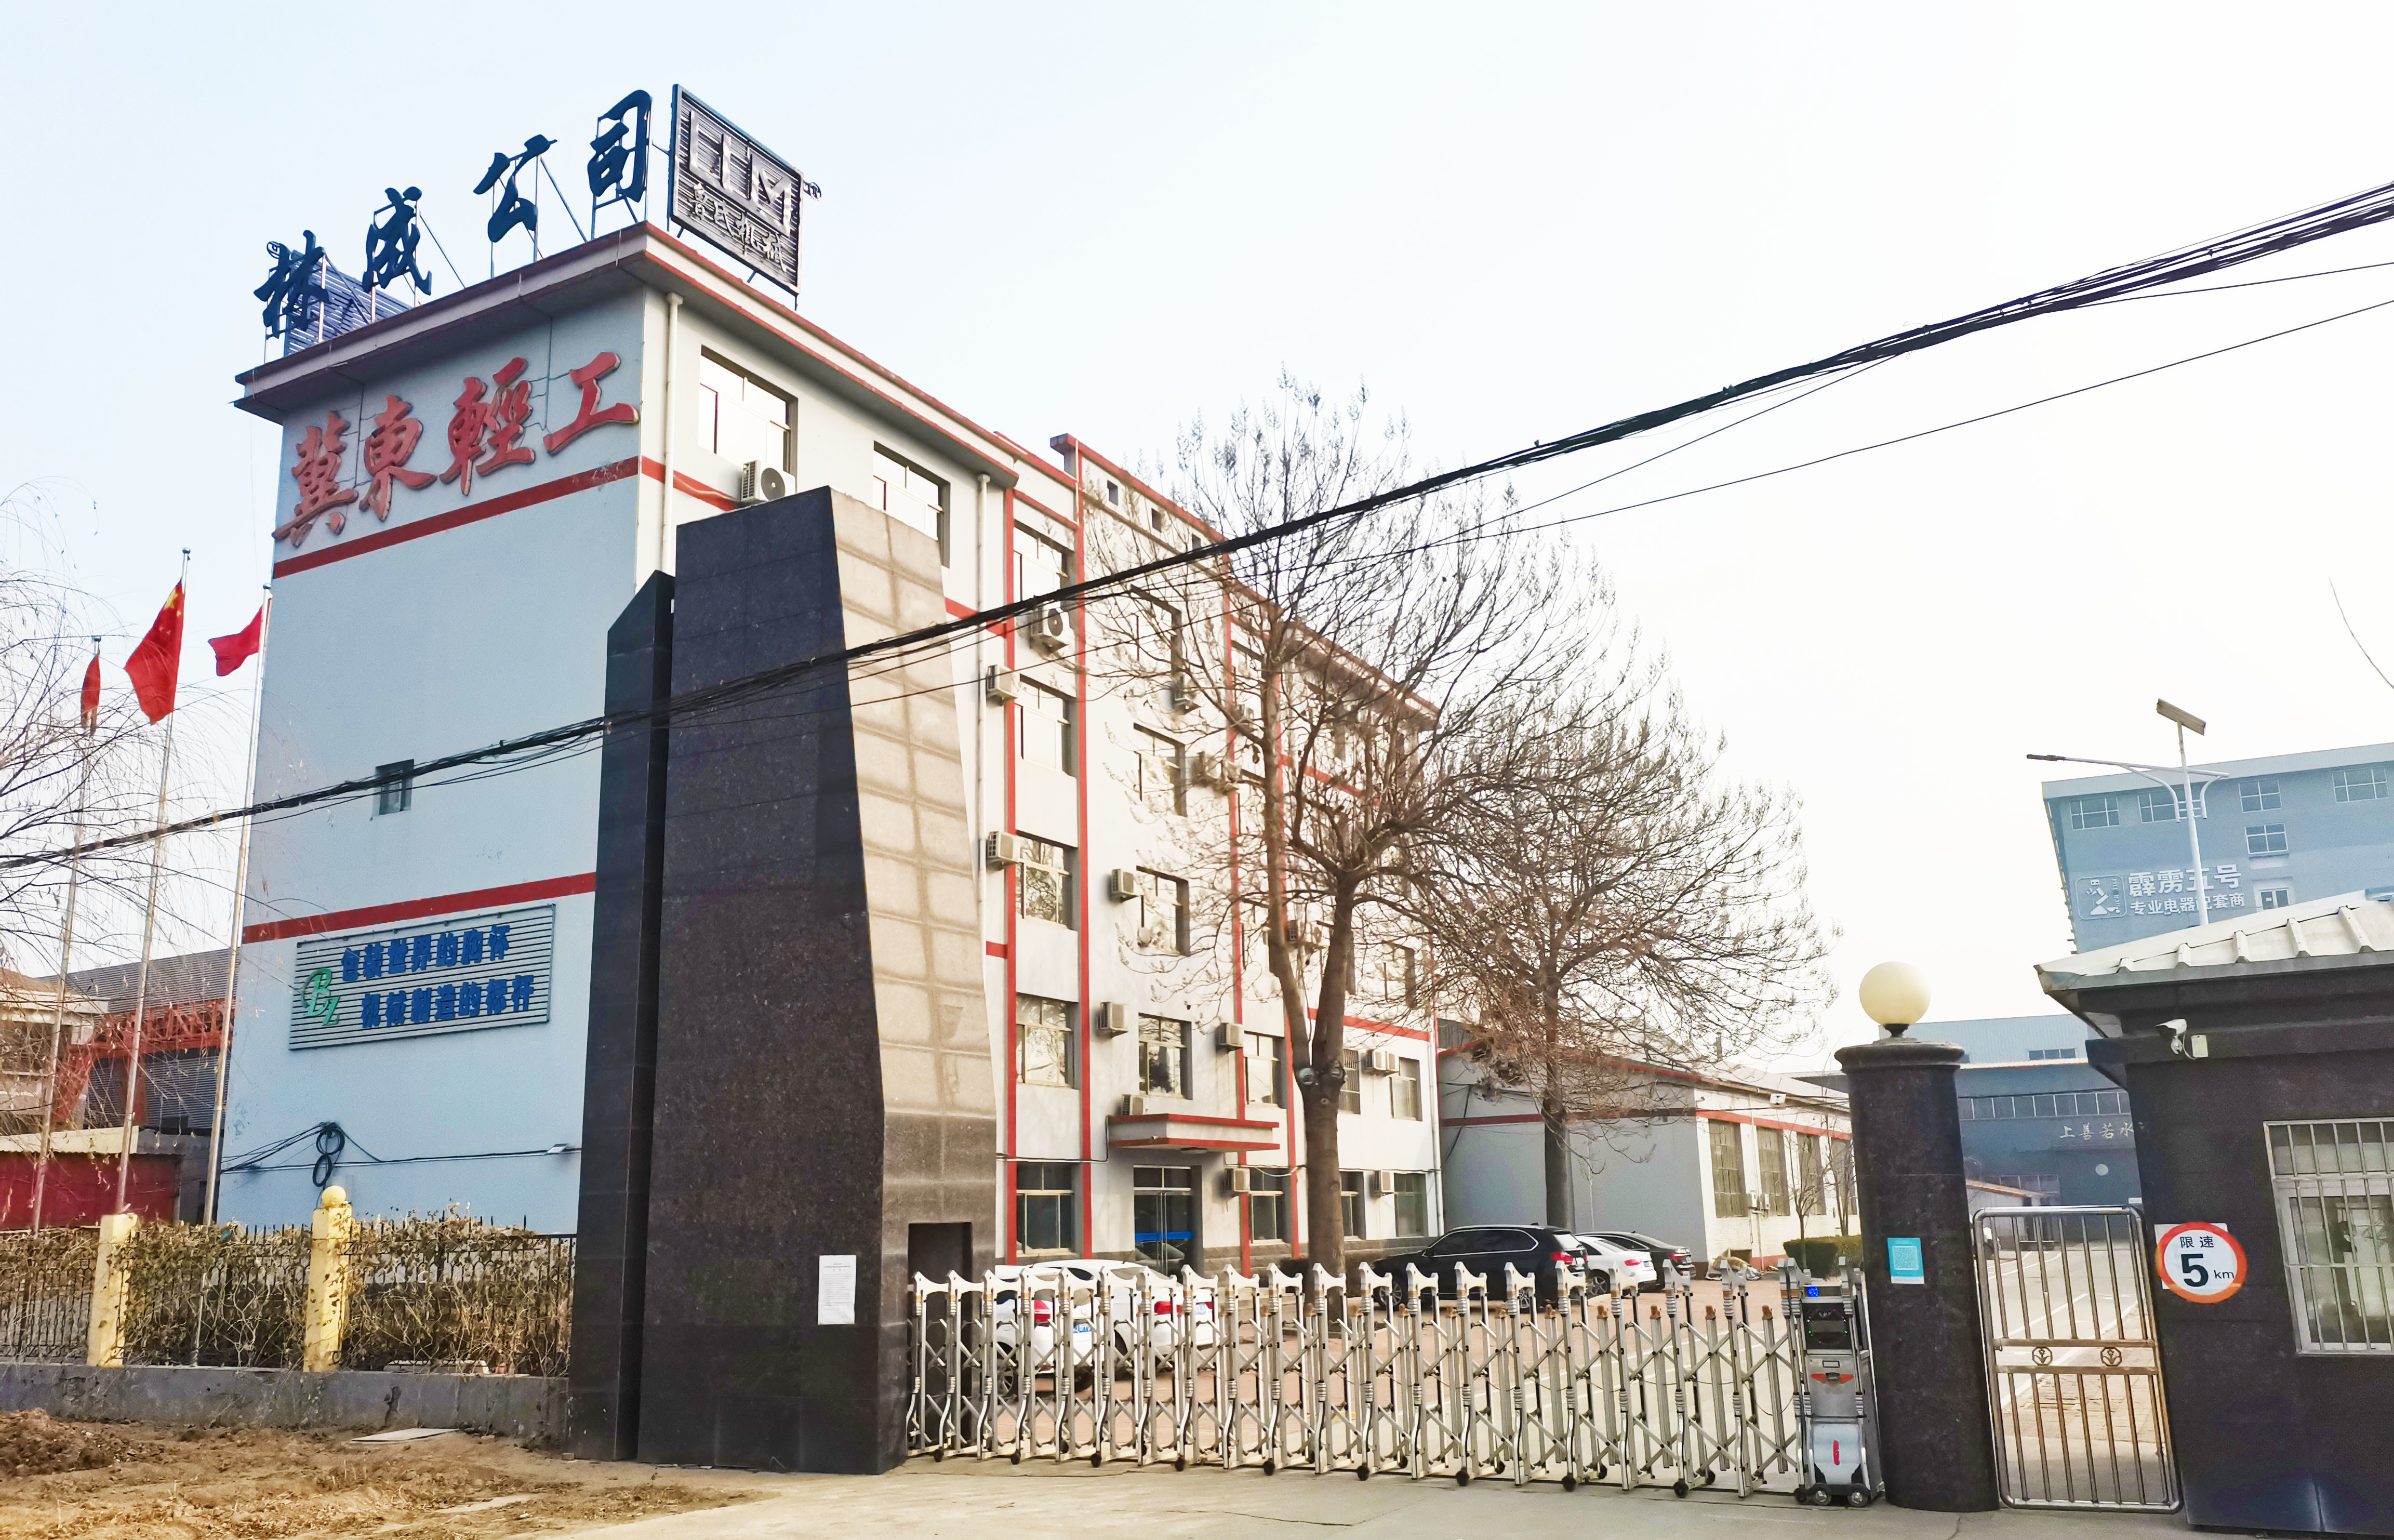 চীন Cangzhou Aodong Light Industry Machinery Equipment Co., Ltd. সংস্থা প্রোফাইল